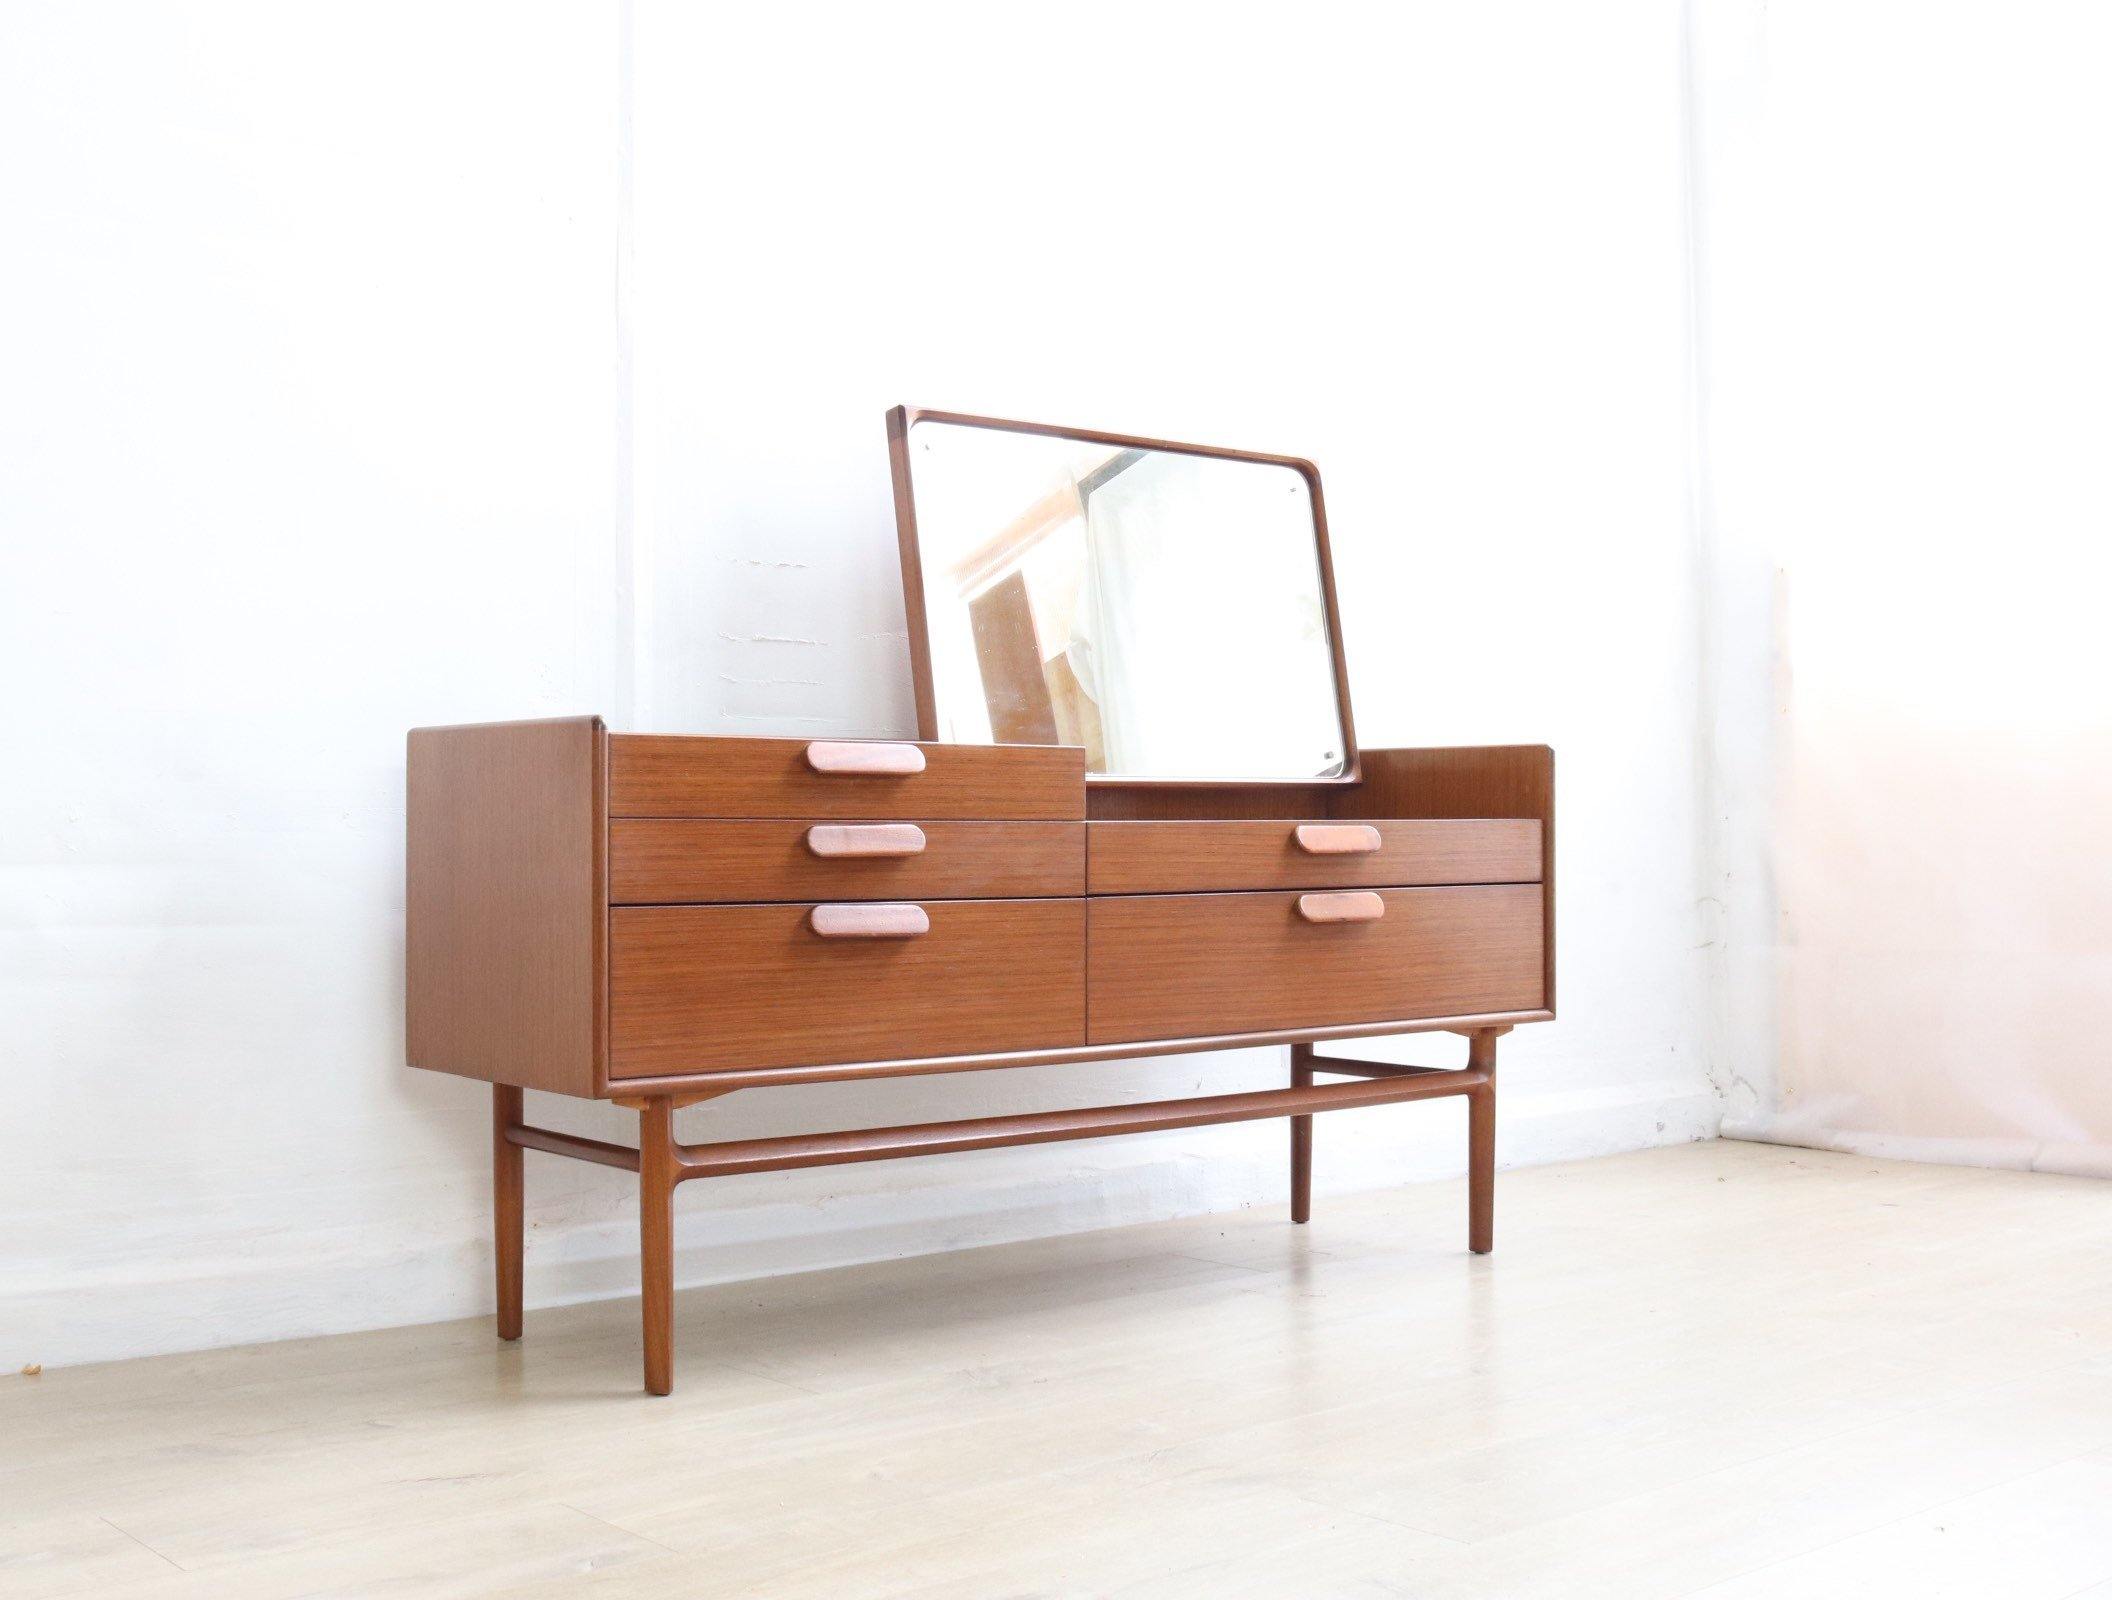 Mid Century Sideboard by Meredew, Rare Model, Dressing Table with Stunning Mirror, Retro Dark Teak Furniture 60s. - teakyfinders